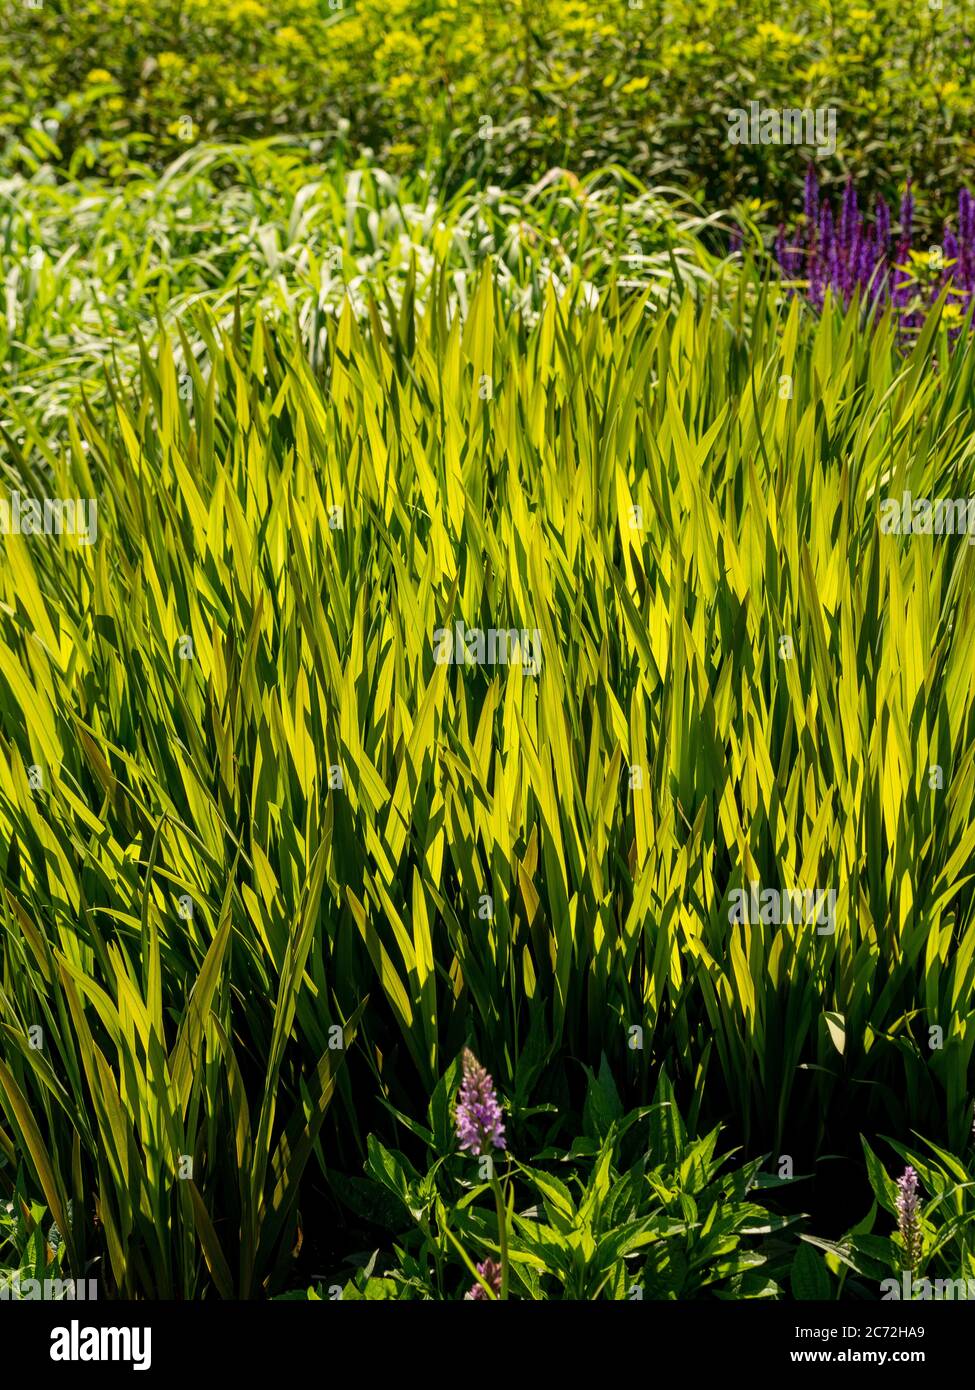 Nahaufnahme von hinterleuchteten Ziergras, die in einem Garten wachsen, mit lila Salvias im Hintergrund. Stockfoto